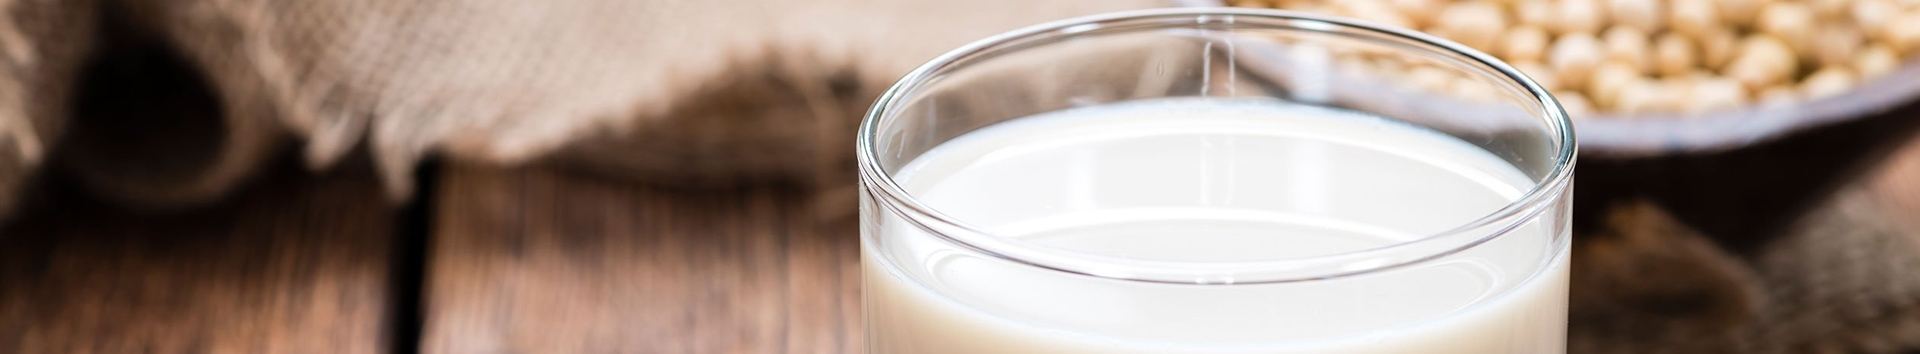 Falhas inaceitáveis com o leite de soja na alimentação do seu bebê